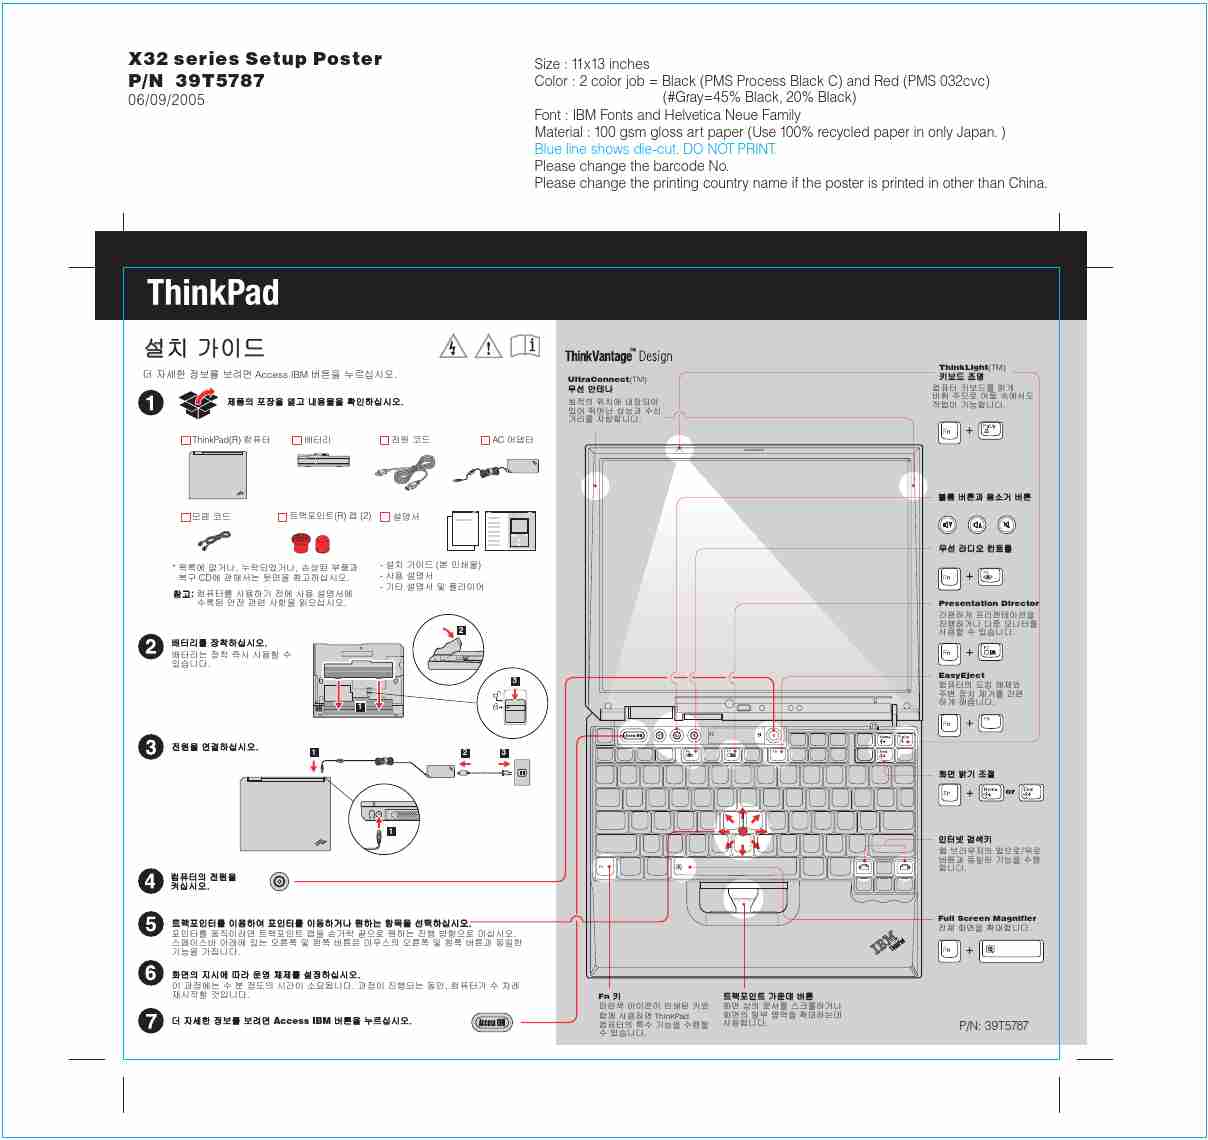 IBM Laptop X32-page_pdf